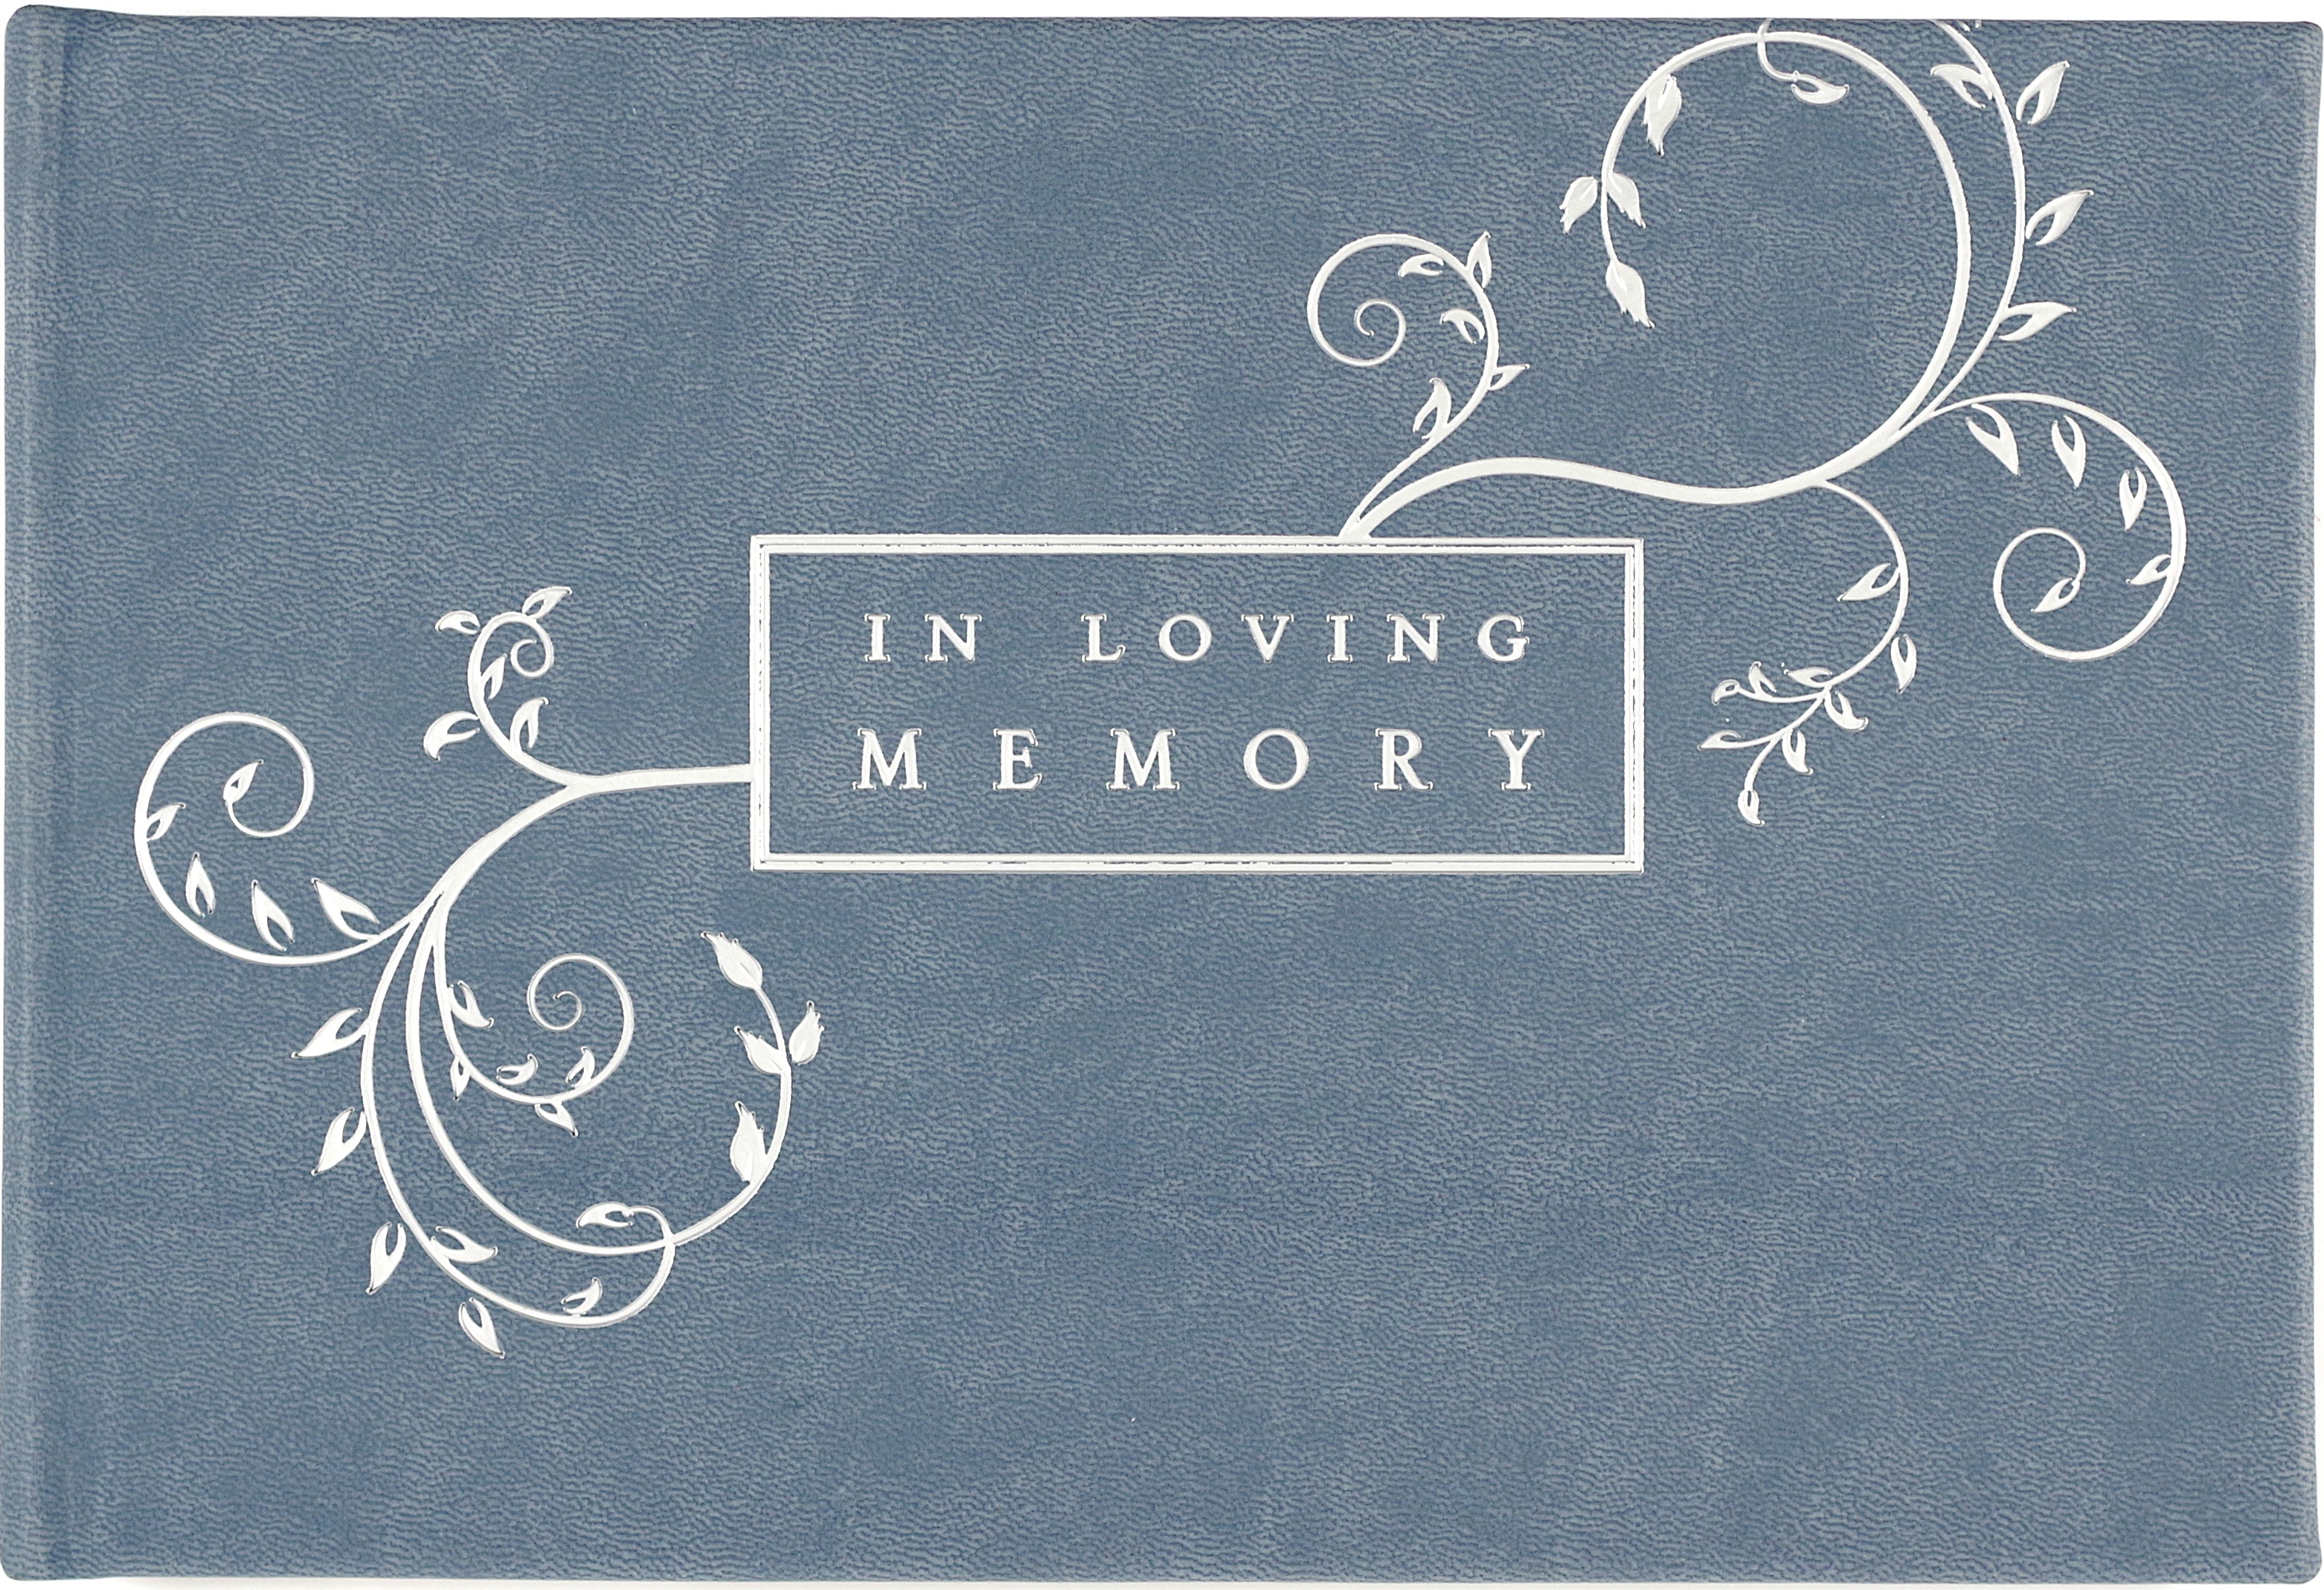 Libro de visitas en Loving Memory Blue